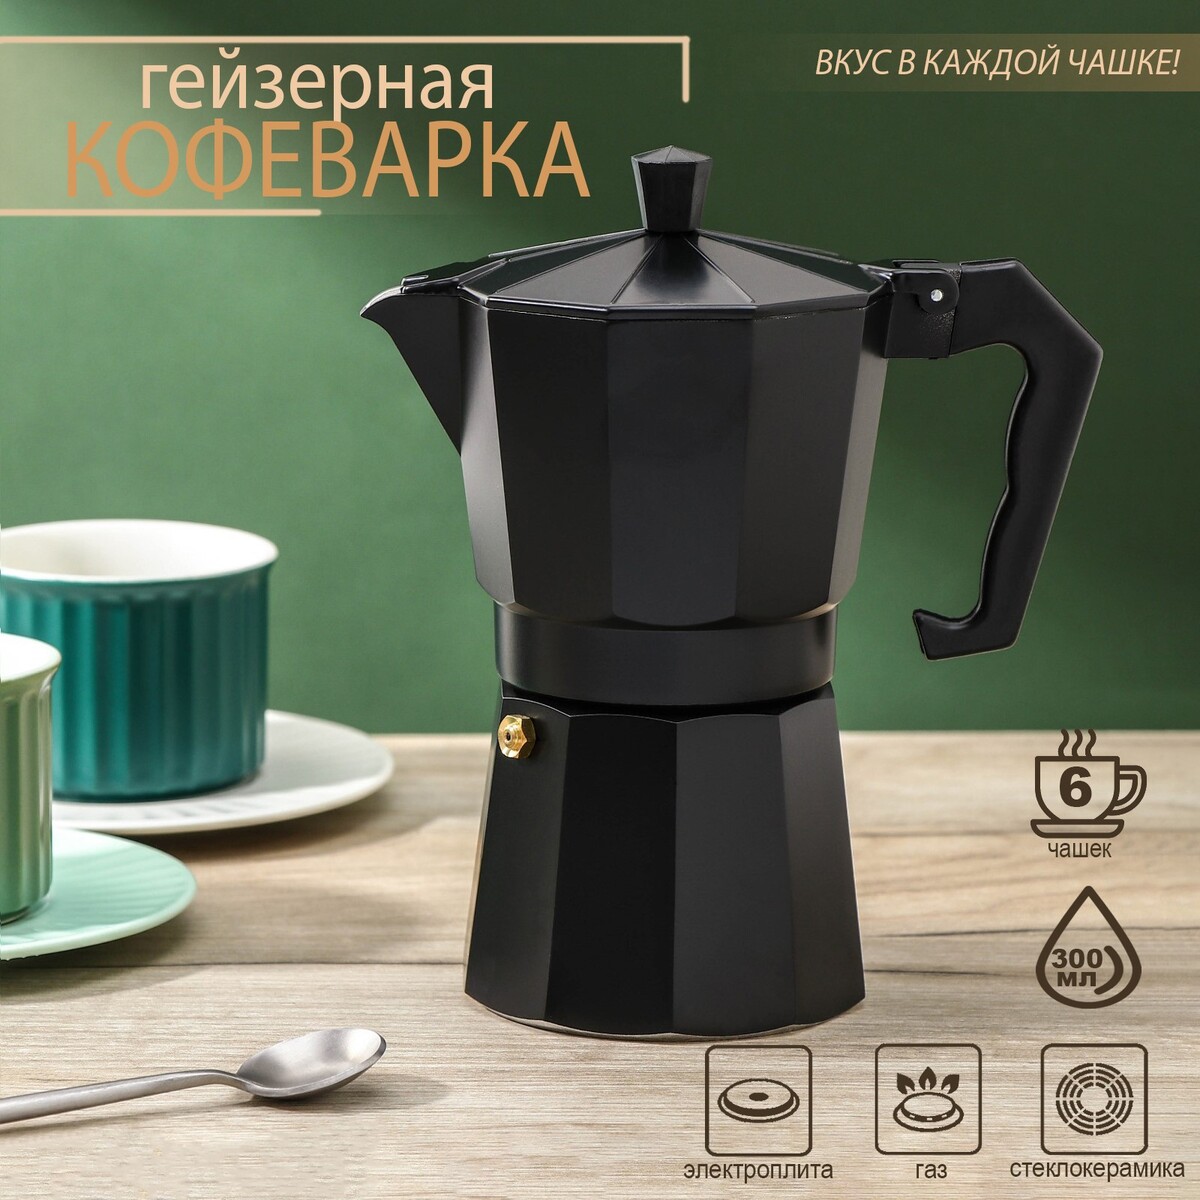 Кофеварка гейзерная доляна alum black, на 6 чашек, 300 мл кофеварка гейзерная bialetti moka express nera 6 порций 4953